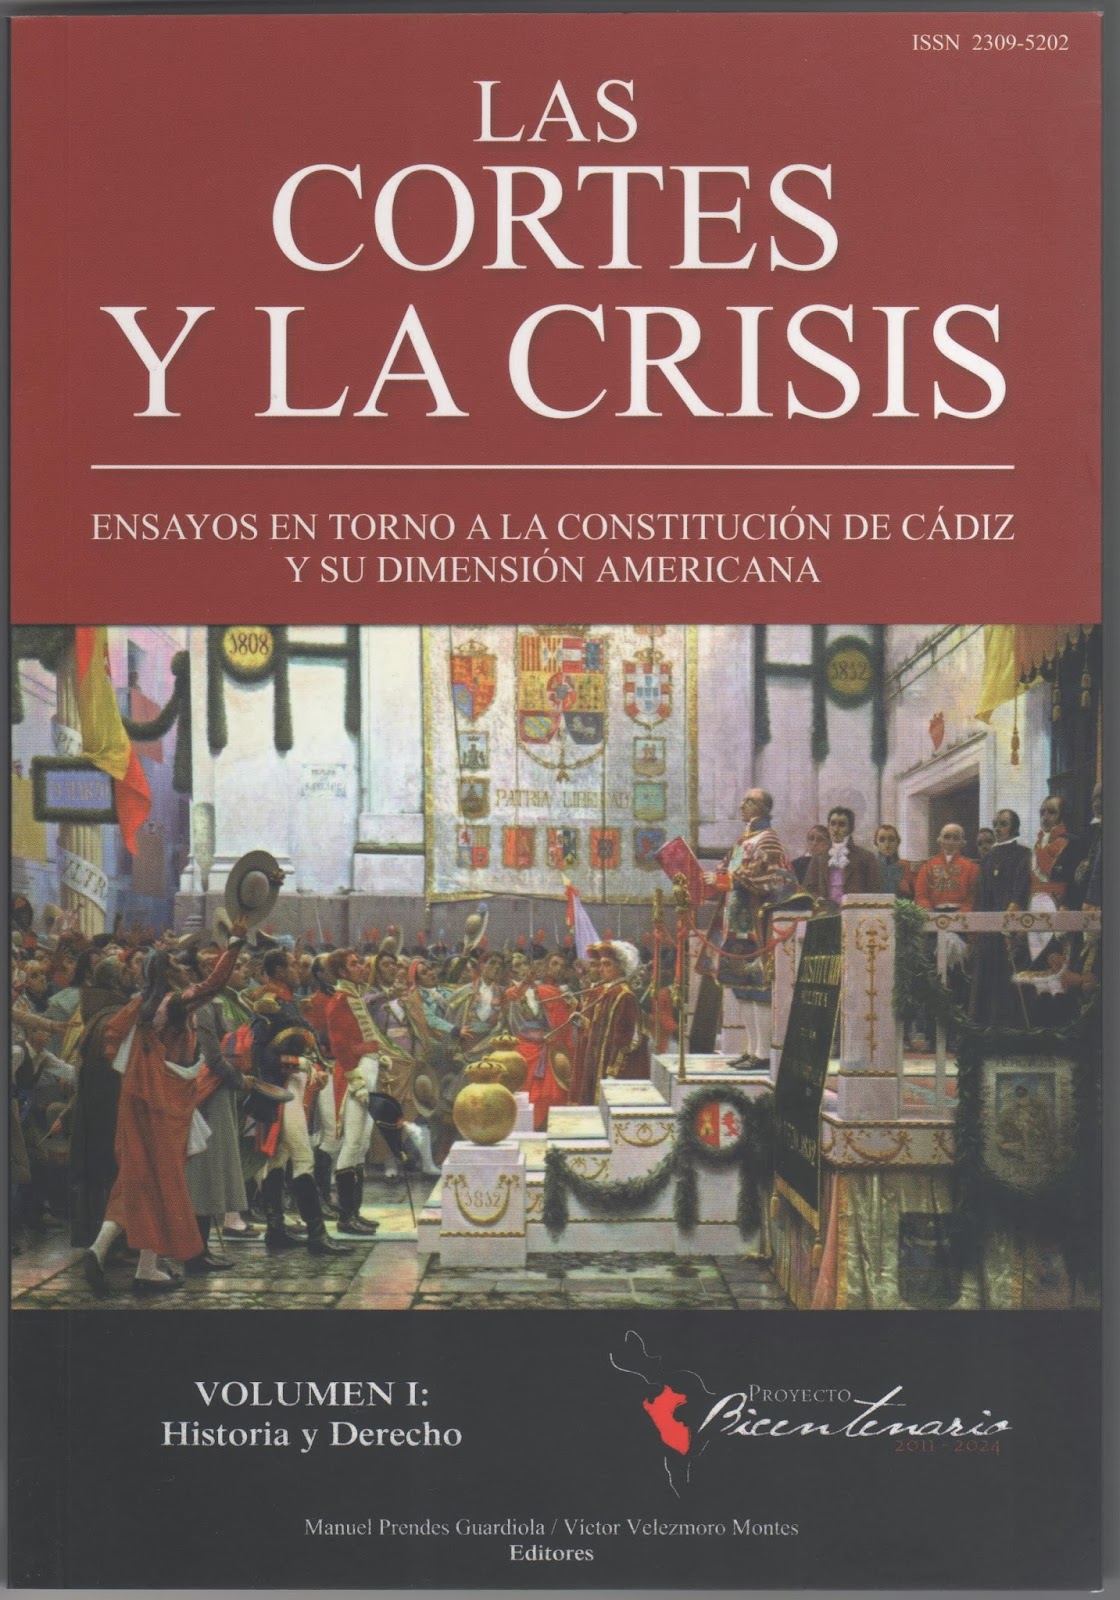 Imagen de portada del libro Las cortes y las crisis